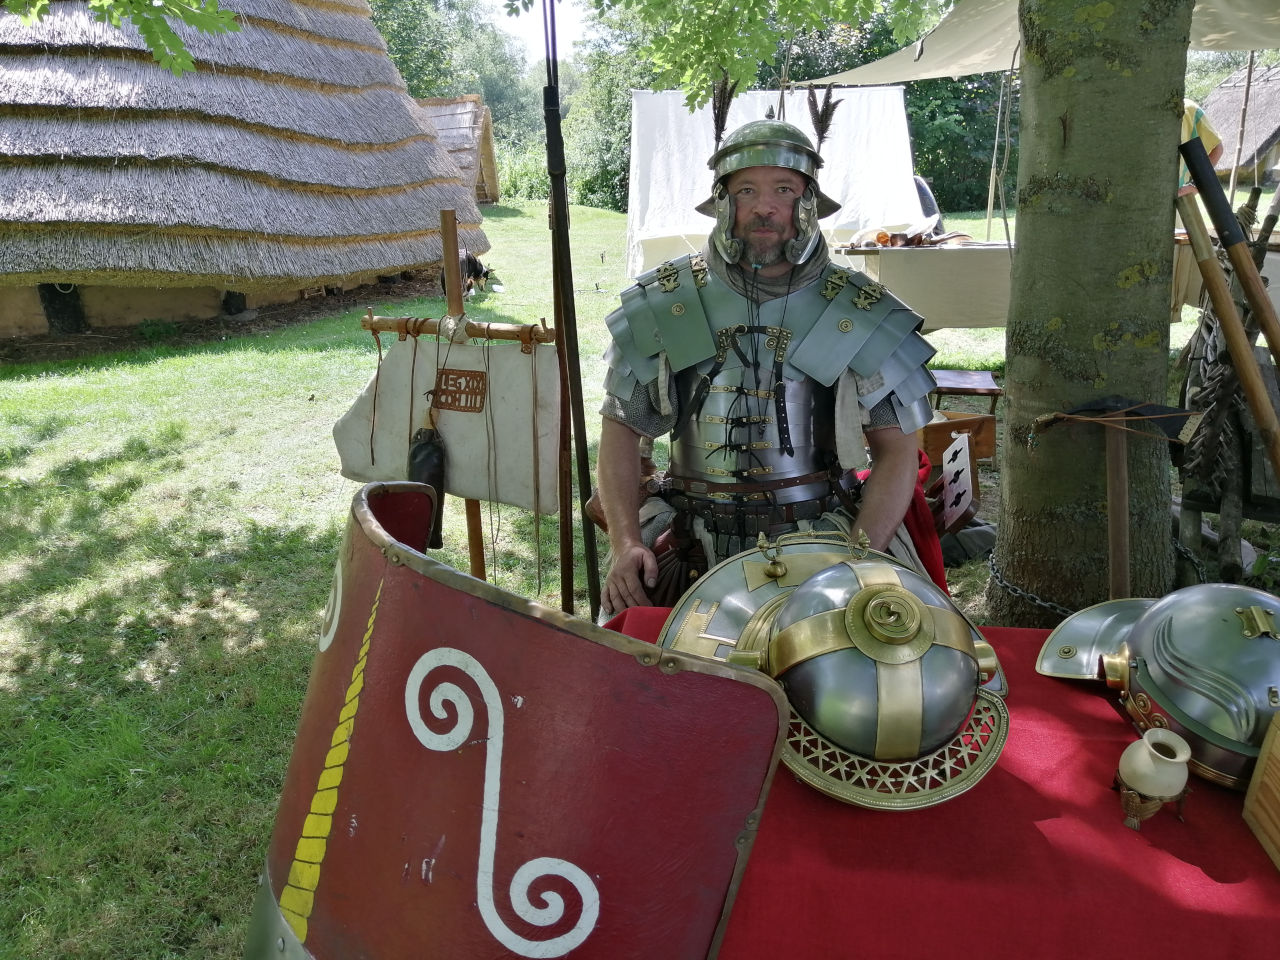 Tesserarius Martialis wartet auf die Besucher, um ihnen die römischen Waffen, Rüstungen und Taktiken zu erläutern.